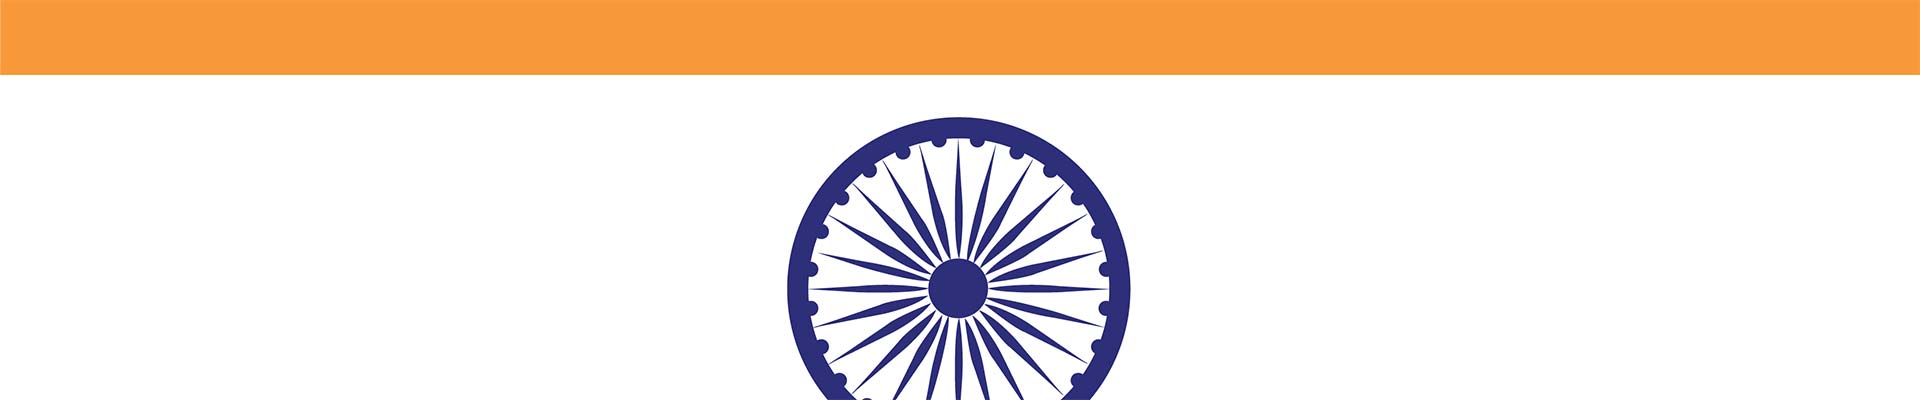 קטע של דגל הודו